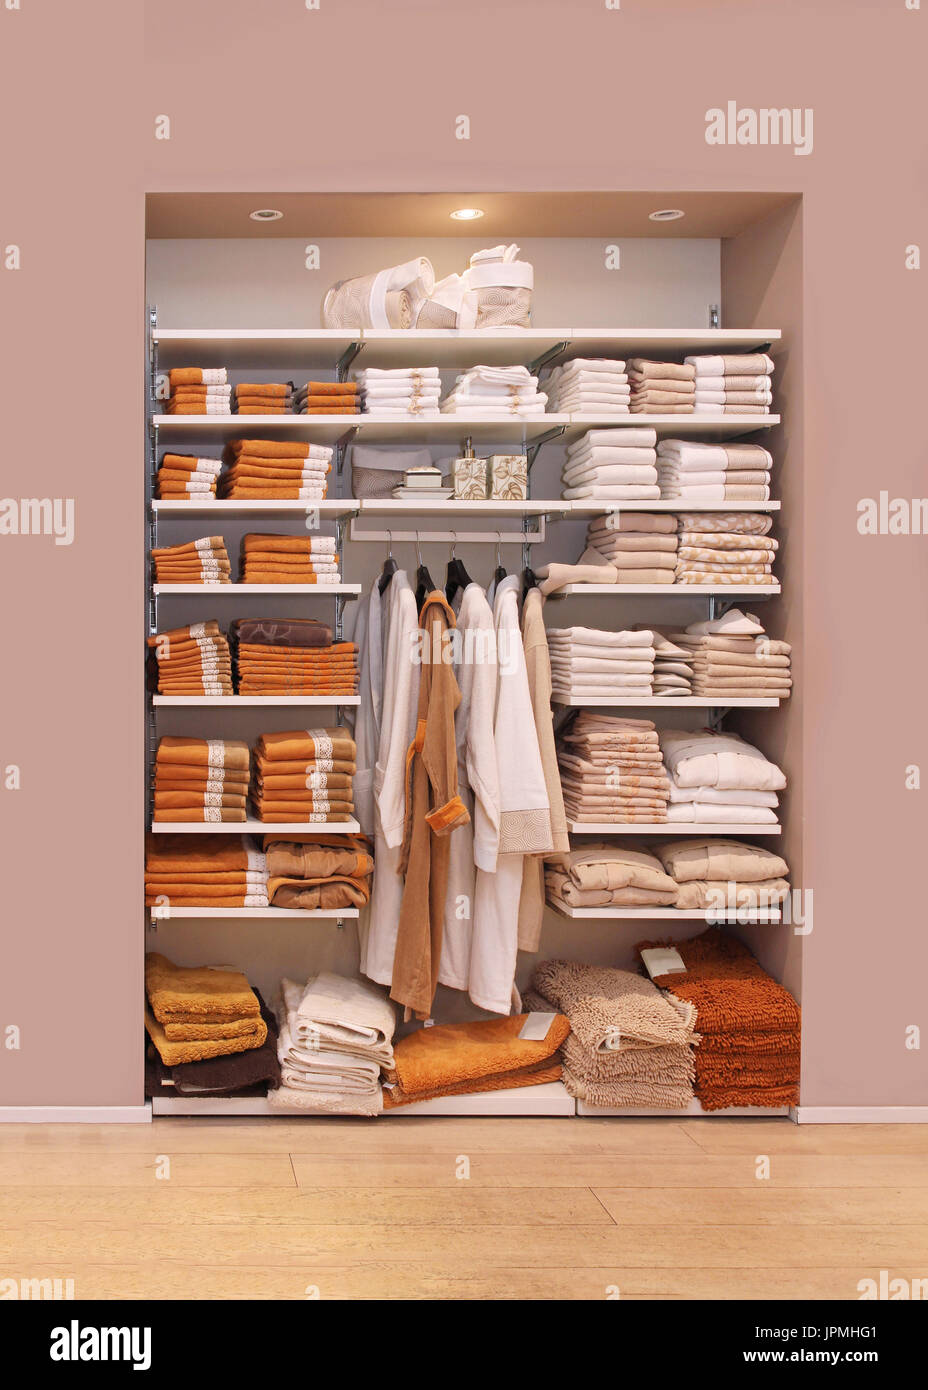 Großen offenen Schrank voll mit Handtücher und Bademäntel Bad  Stockfotografie - Alamy